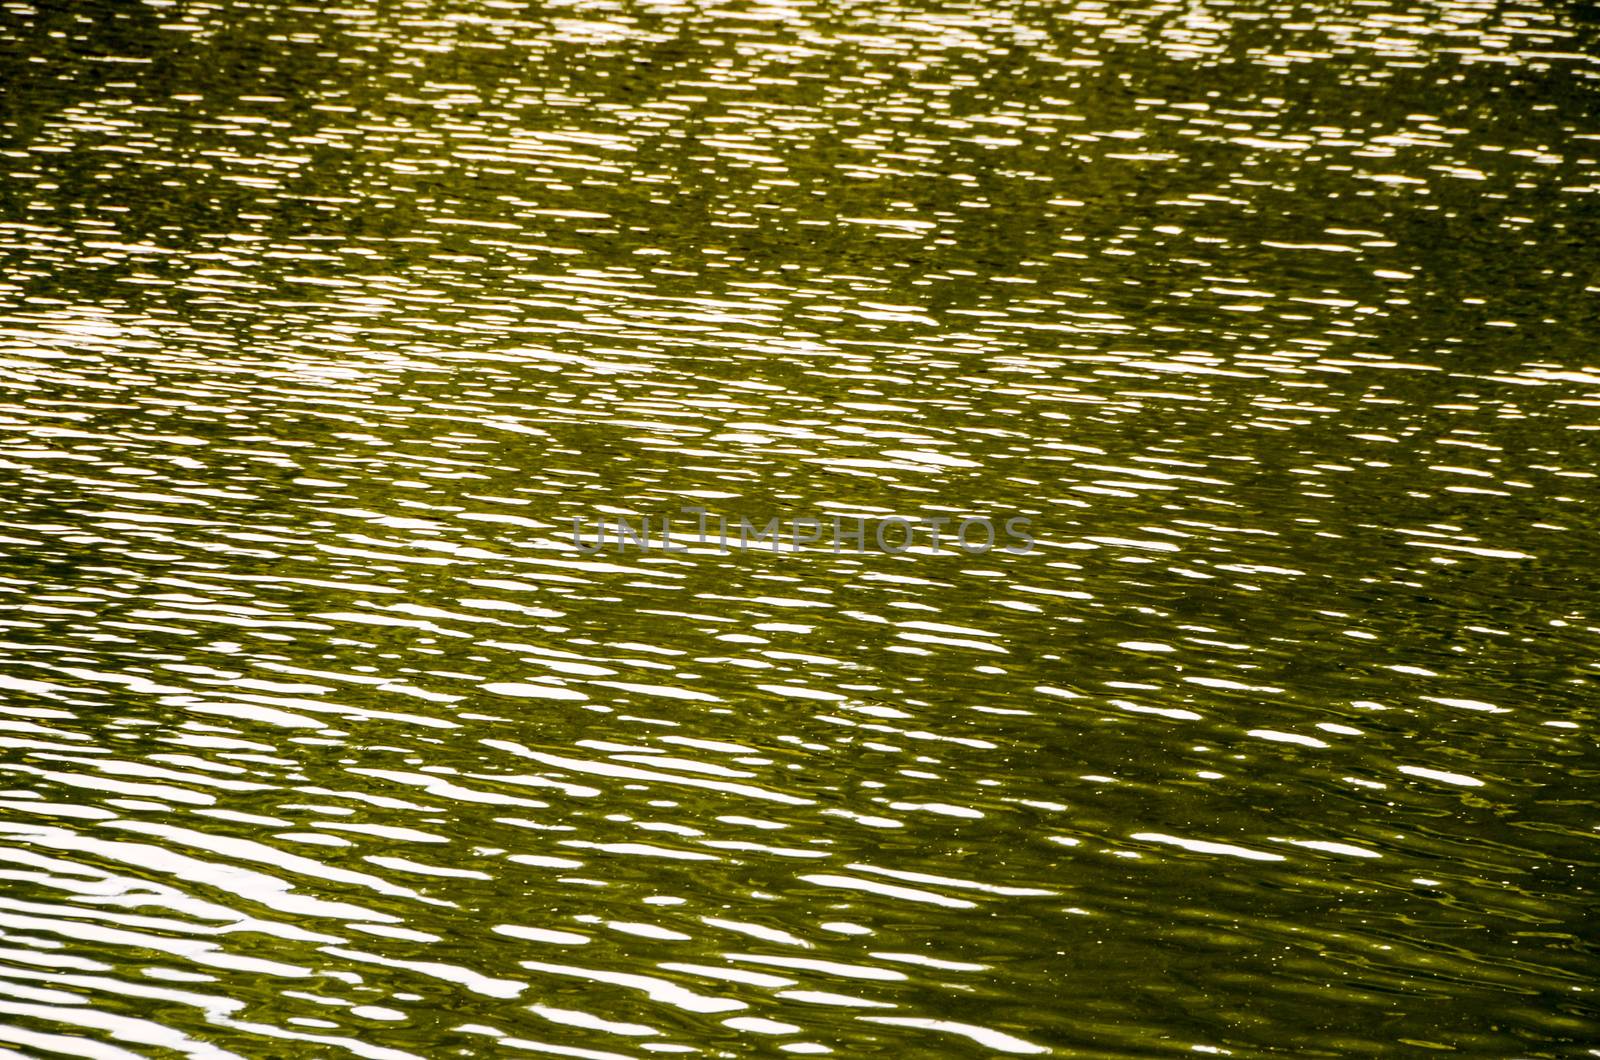 Green Water Texture by underworld